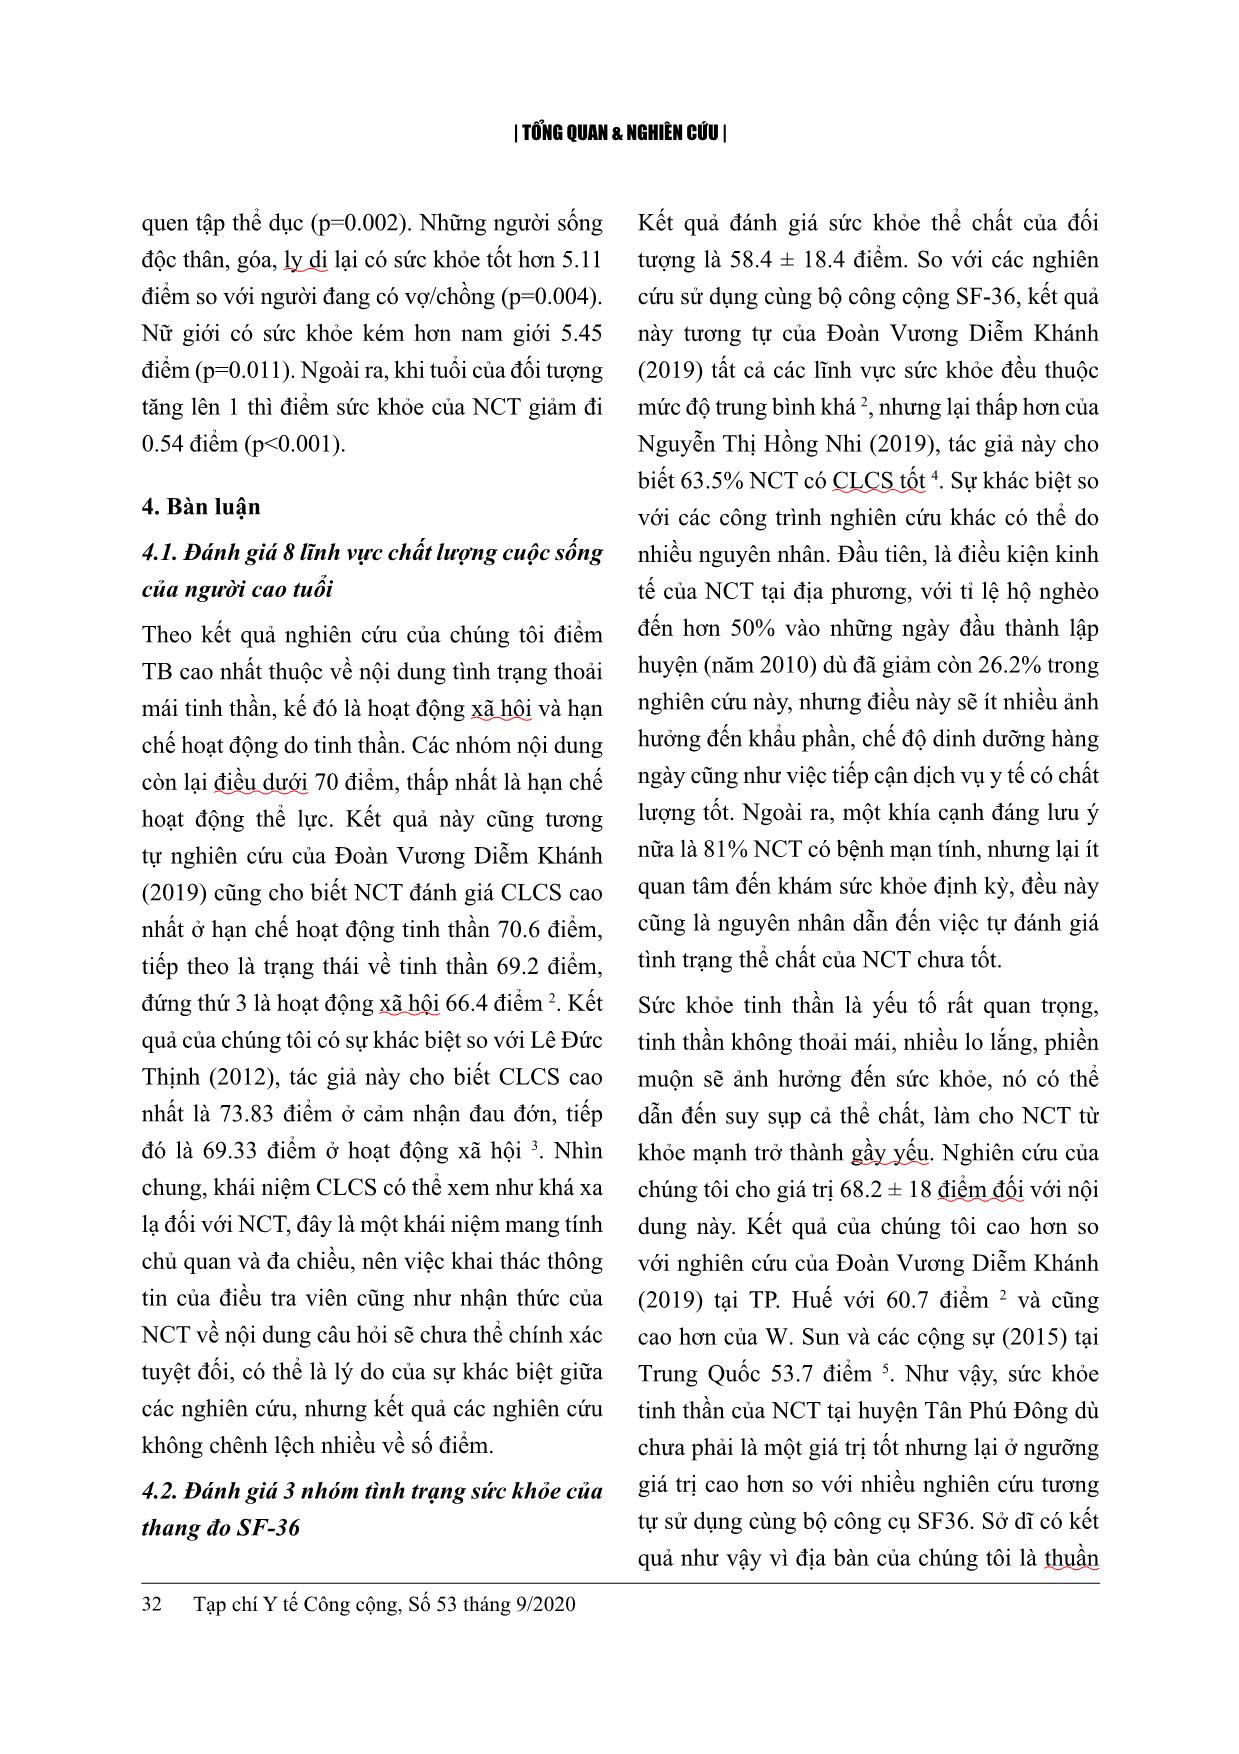 Chất lượng cuộc sống và một số yếu tố liên quan ở người cao tuổi tại huyện Tân Phú Đông, tỉnh Tiền Giang năm 2020 trang 7